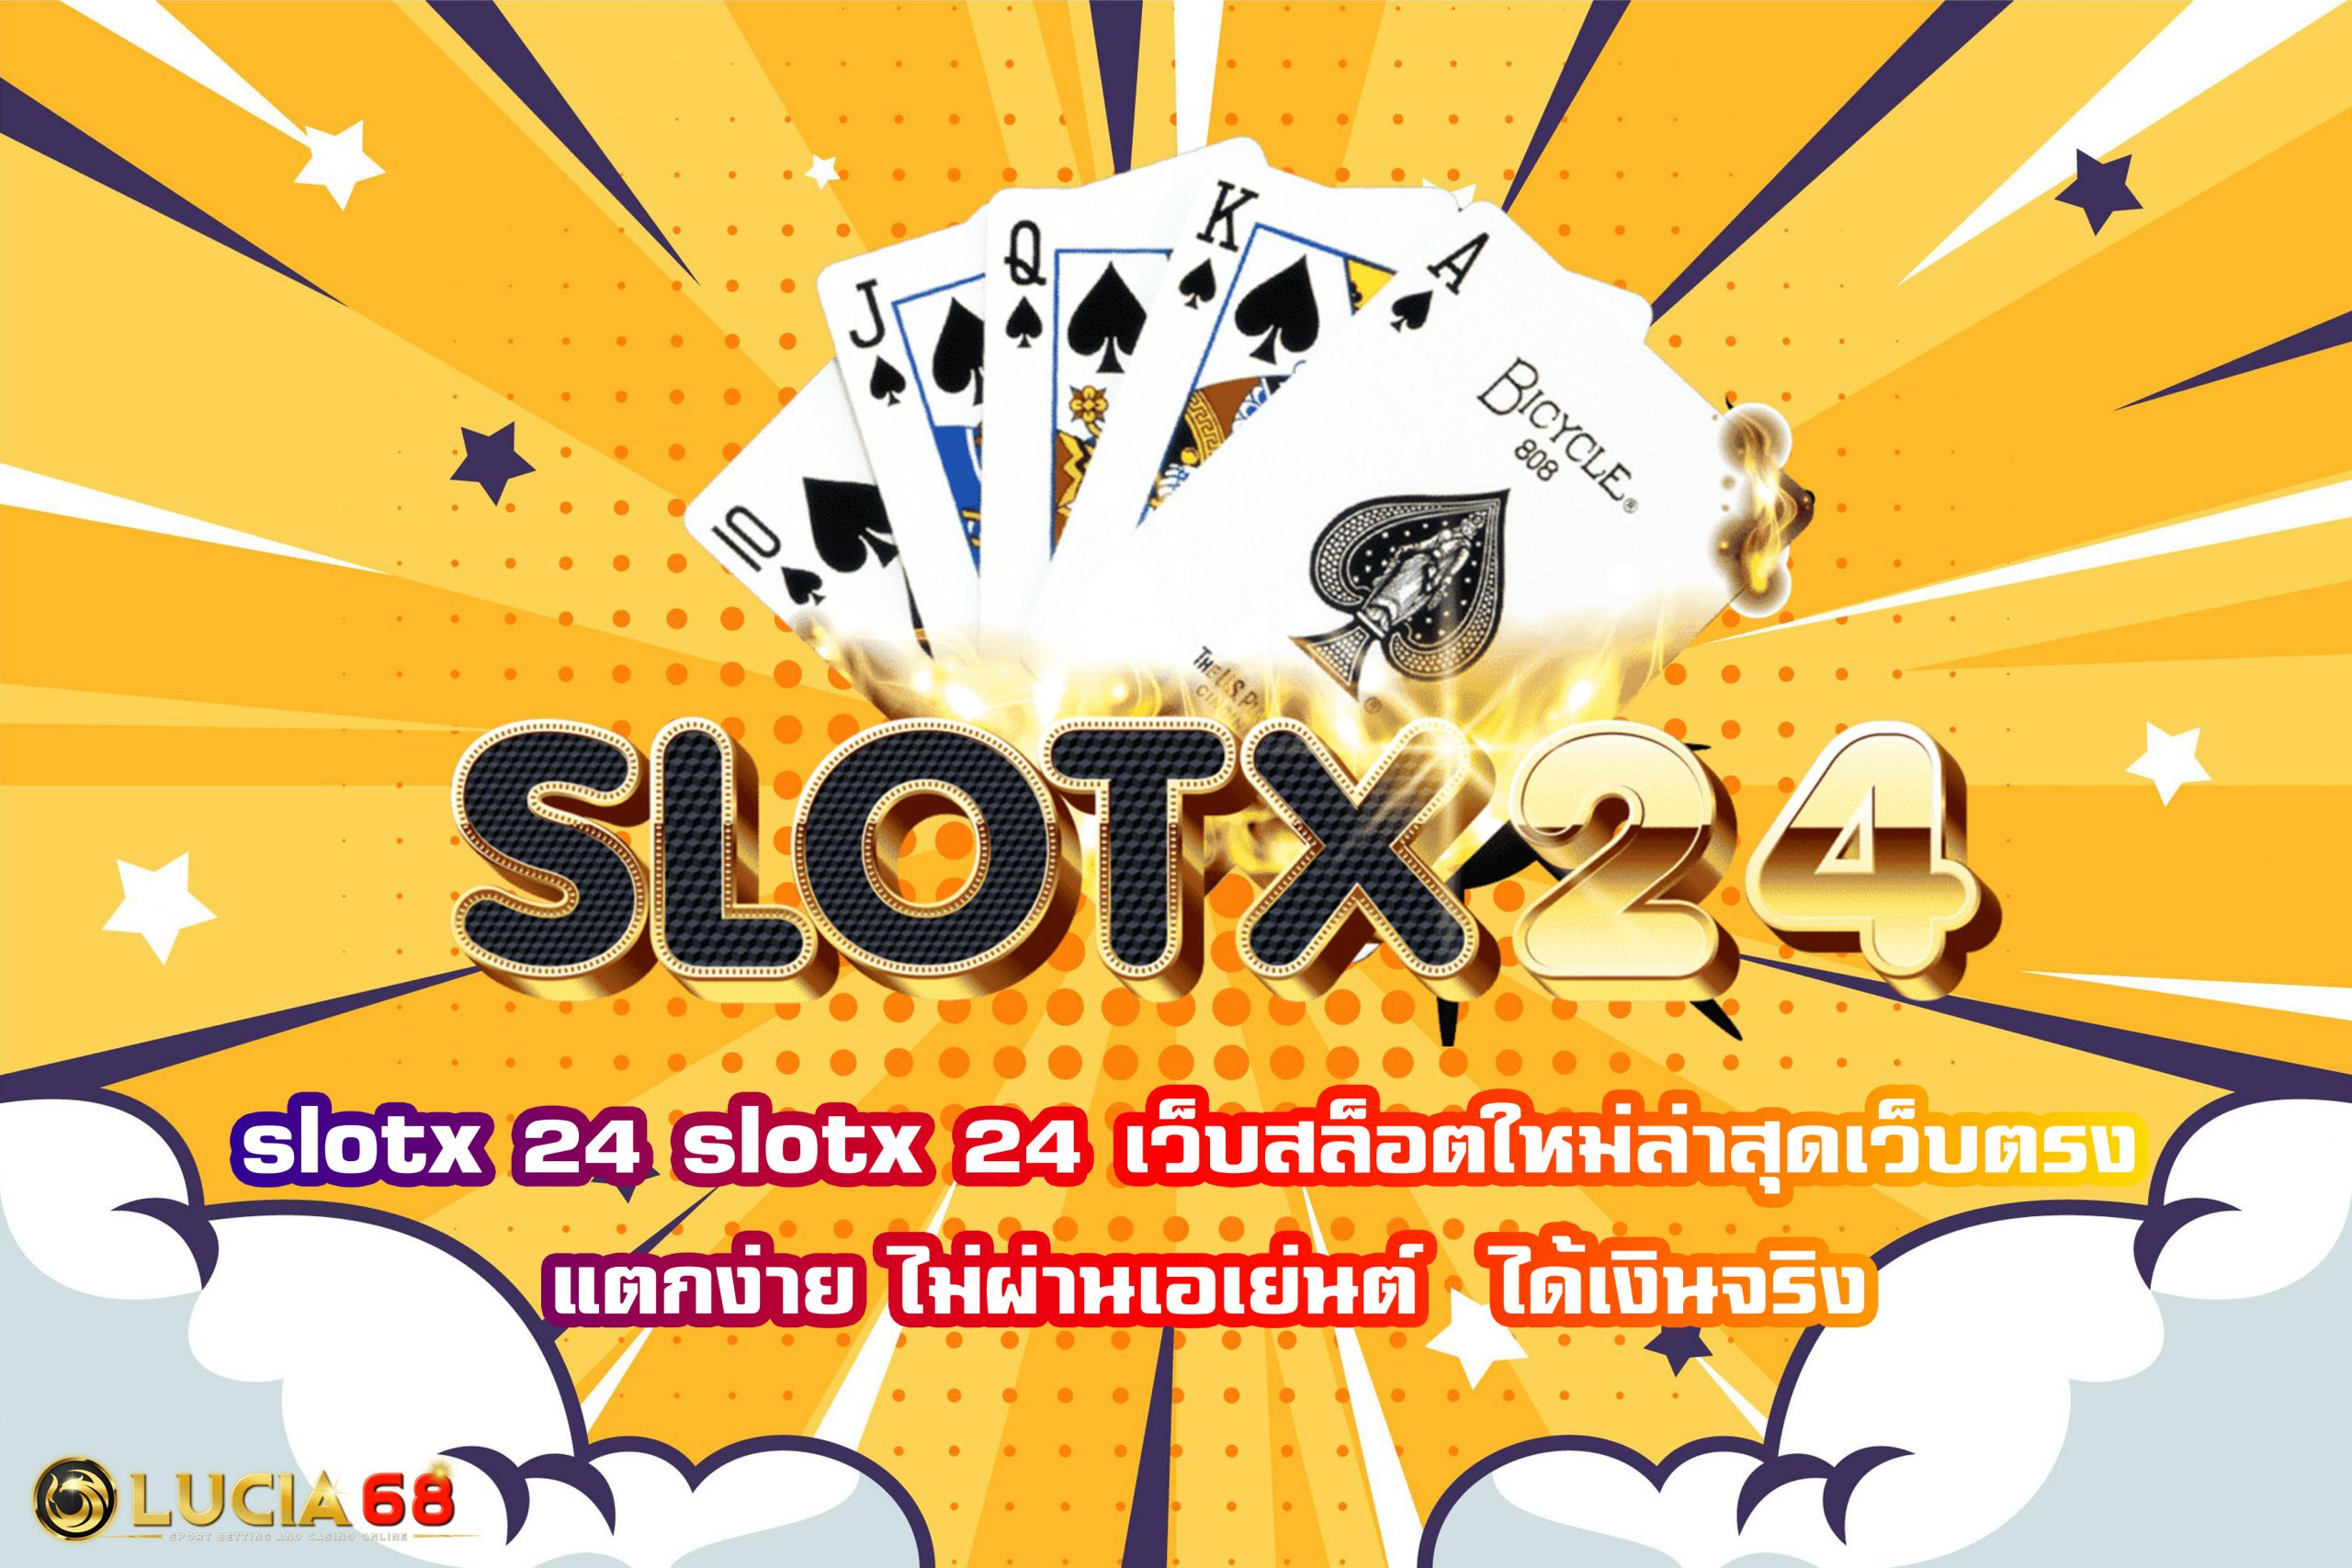 slotx 24 เว็บสล็อตใหม่ล่าสุดเว็บตรง แตกง่าย ไม่ผ่านเอเย่นต์  ได้เงินจริง